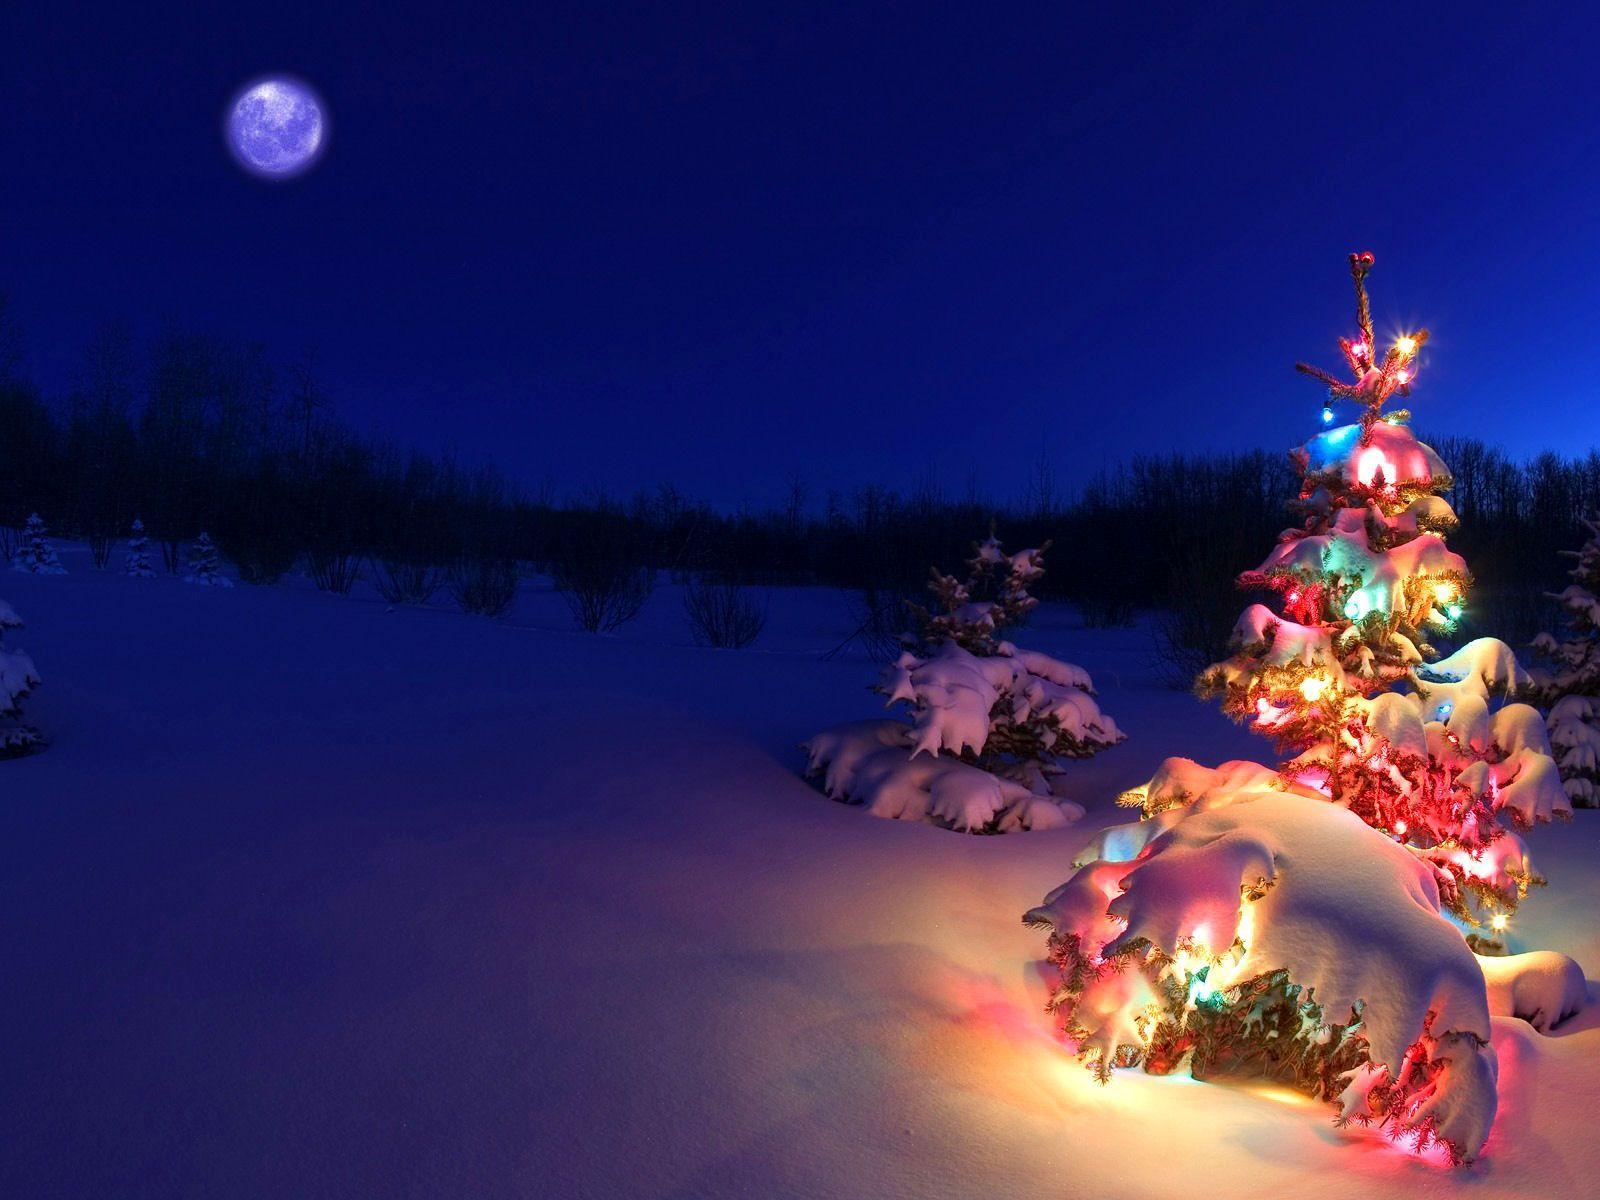 Bạn đang tìm kiếm một hình nền Giáng Sinh đầy tuyết và lấp lánh? Hãy xem qua những hình nền cây thông tuyết Giáng Sinh đẹp mắt này. Hình nền cây thông tuyết sẽ cho bạn cảm giác thật yên bình, tĩnh lặng và ấm áp. Hãy tải xuống ngay những hình ảnh này và thăng hoa cảm xúc trong mùa đông này.